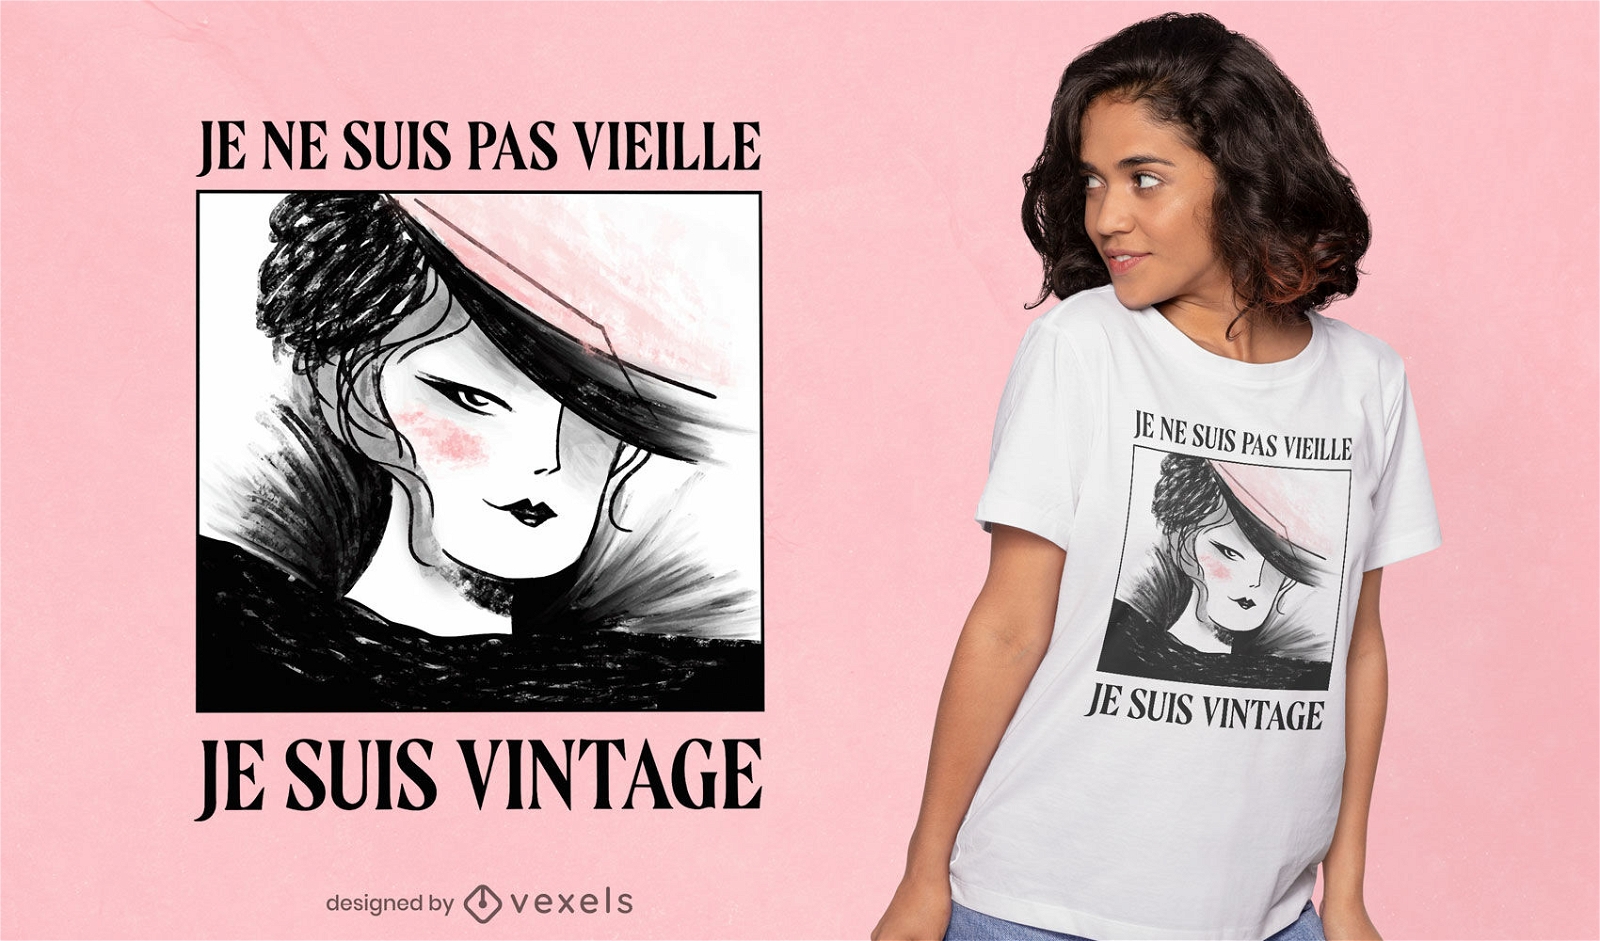 Eu sou um design vintage de camiseta francesa